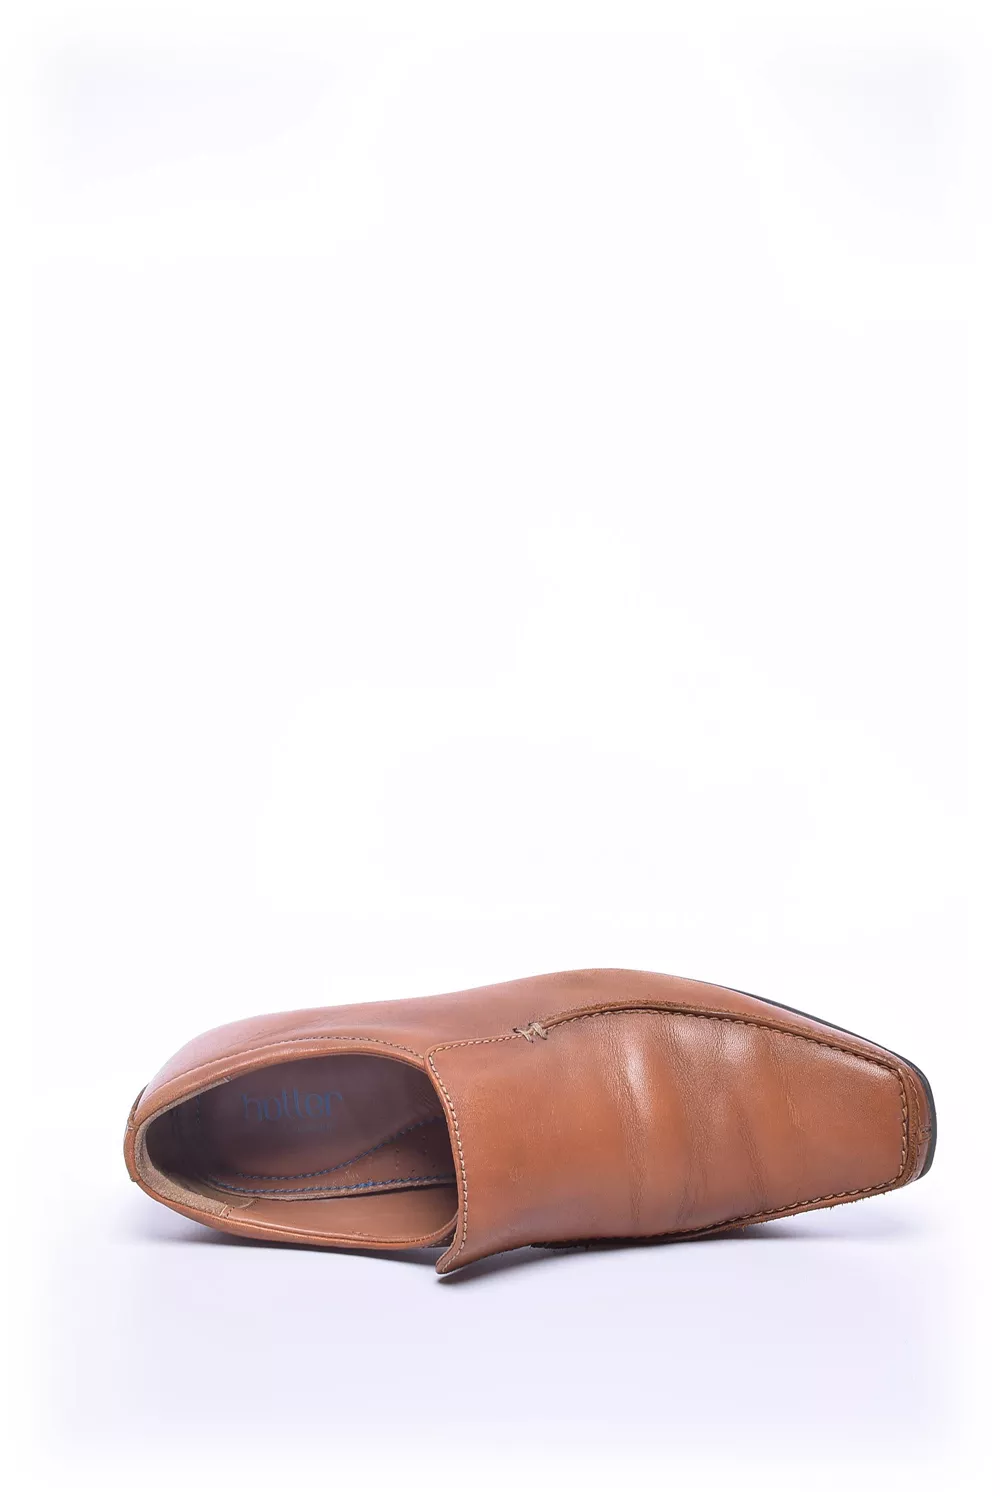 Pantofi barbati [4]